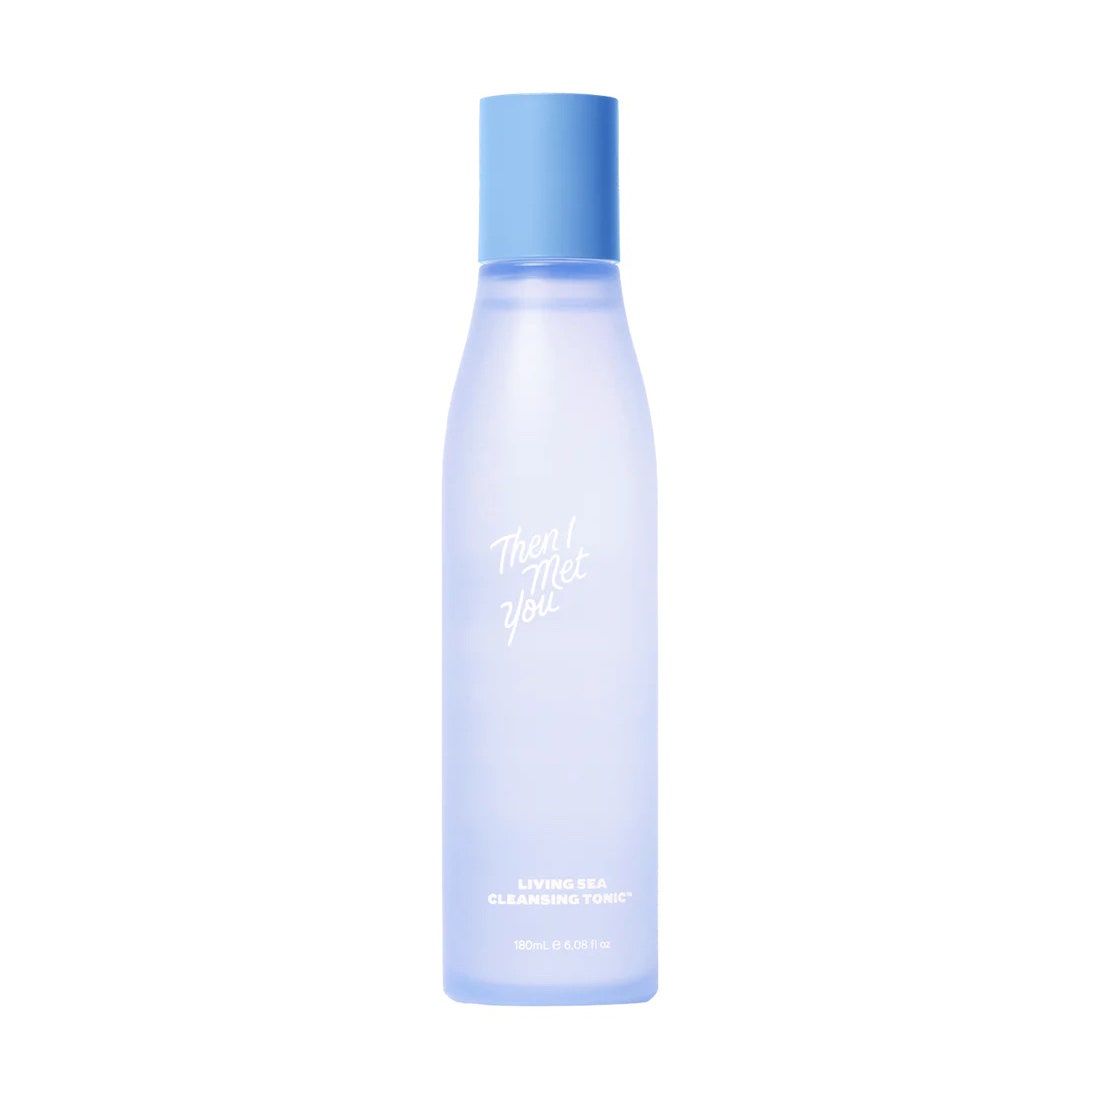 Dann traf ich dich: Living Sea Cleansing Tonic, blaue Flasche auf weißem Hintergrund